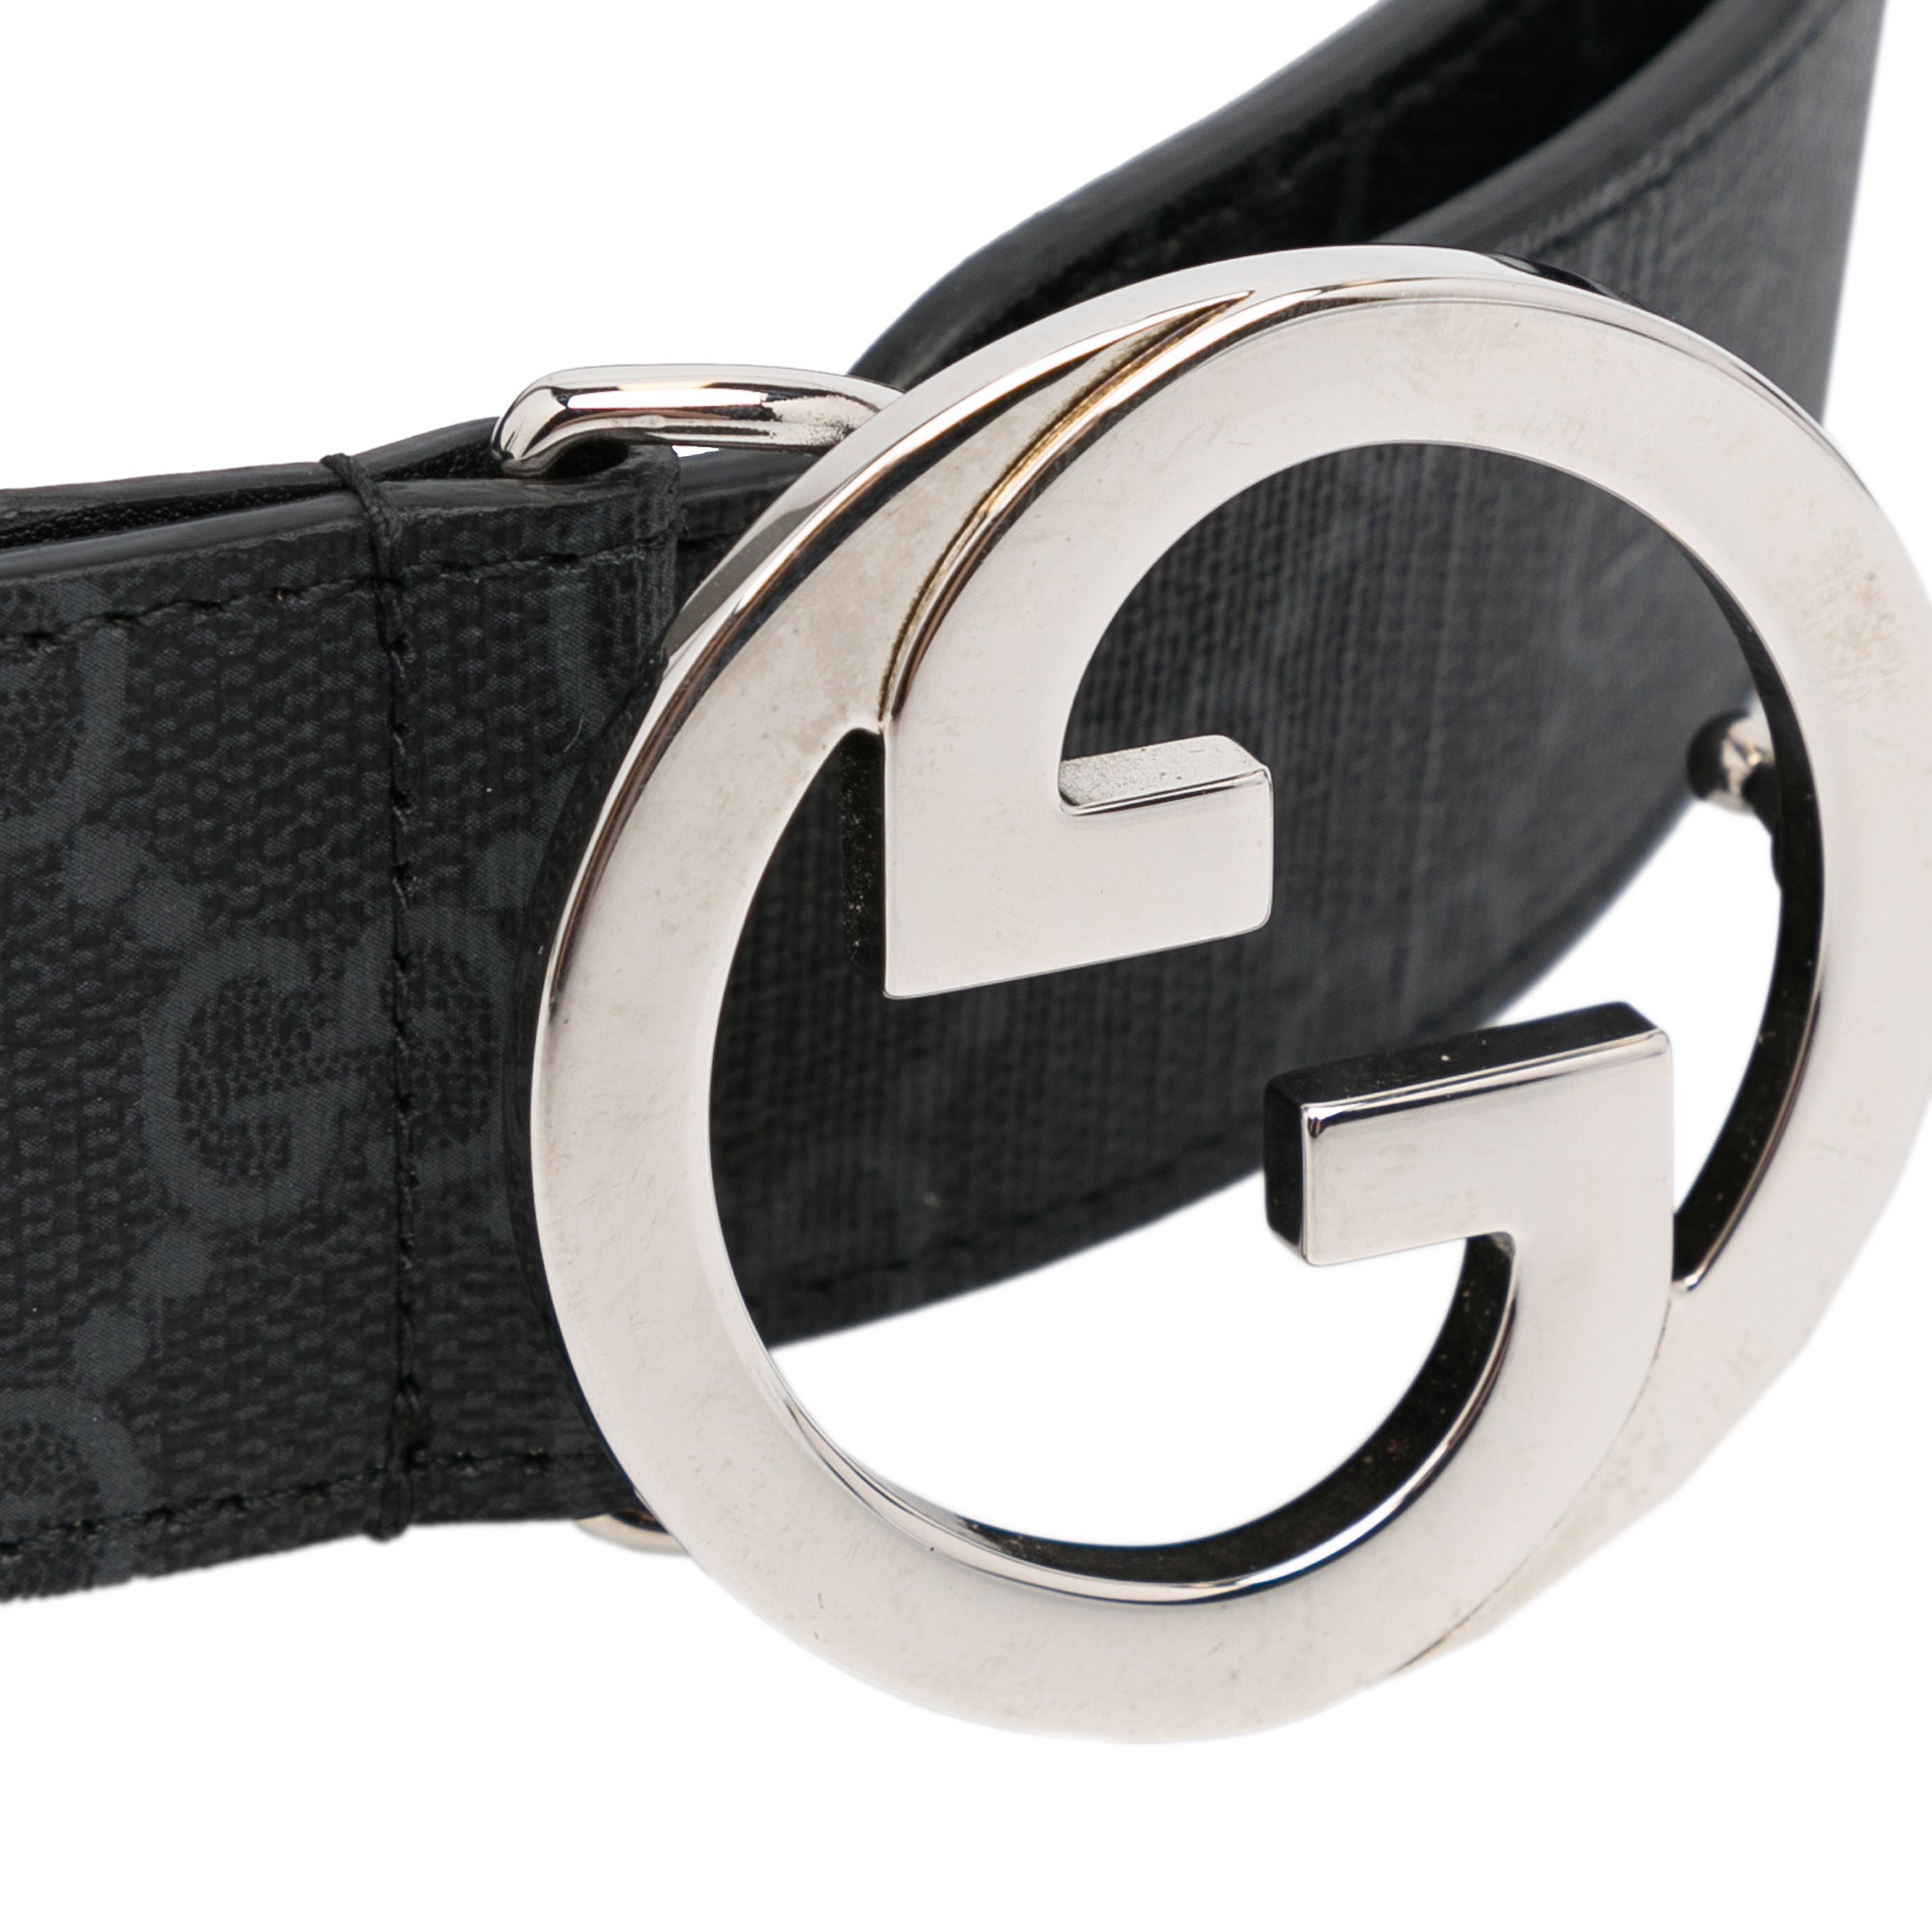 Black Leather GG Supreme Belt